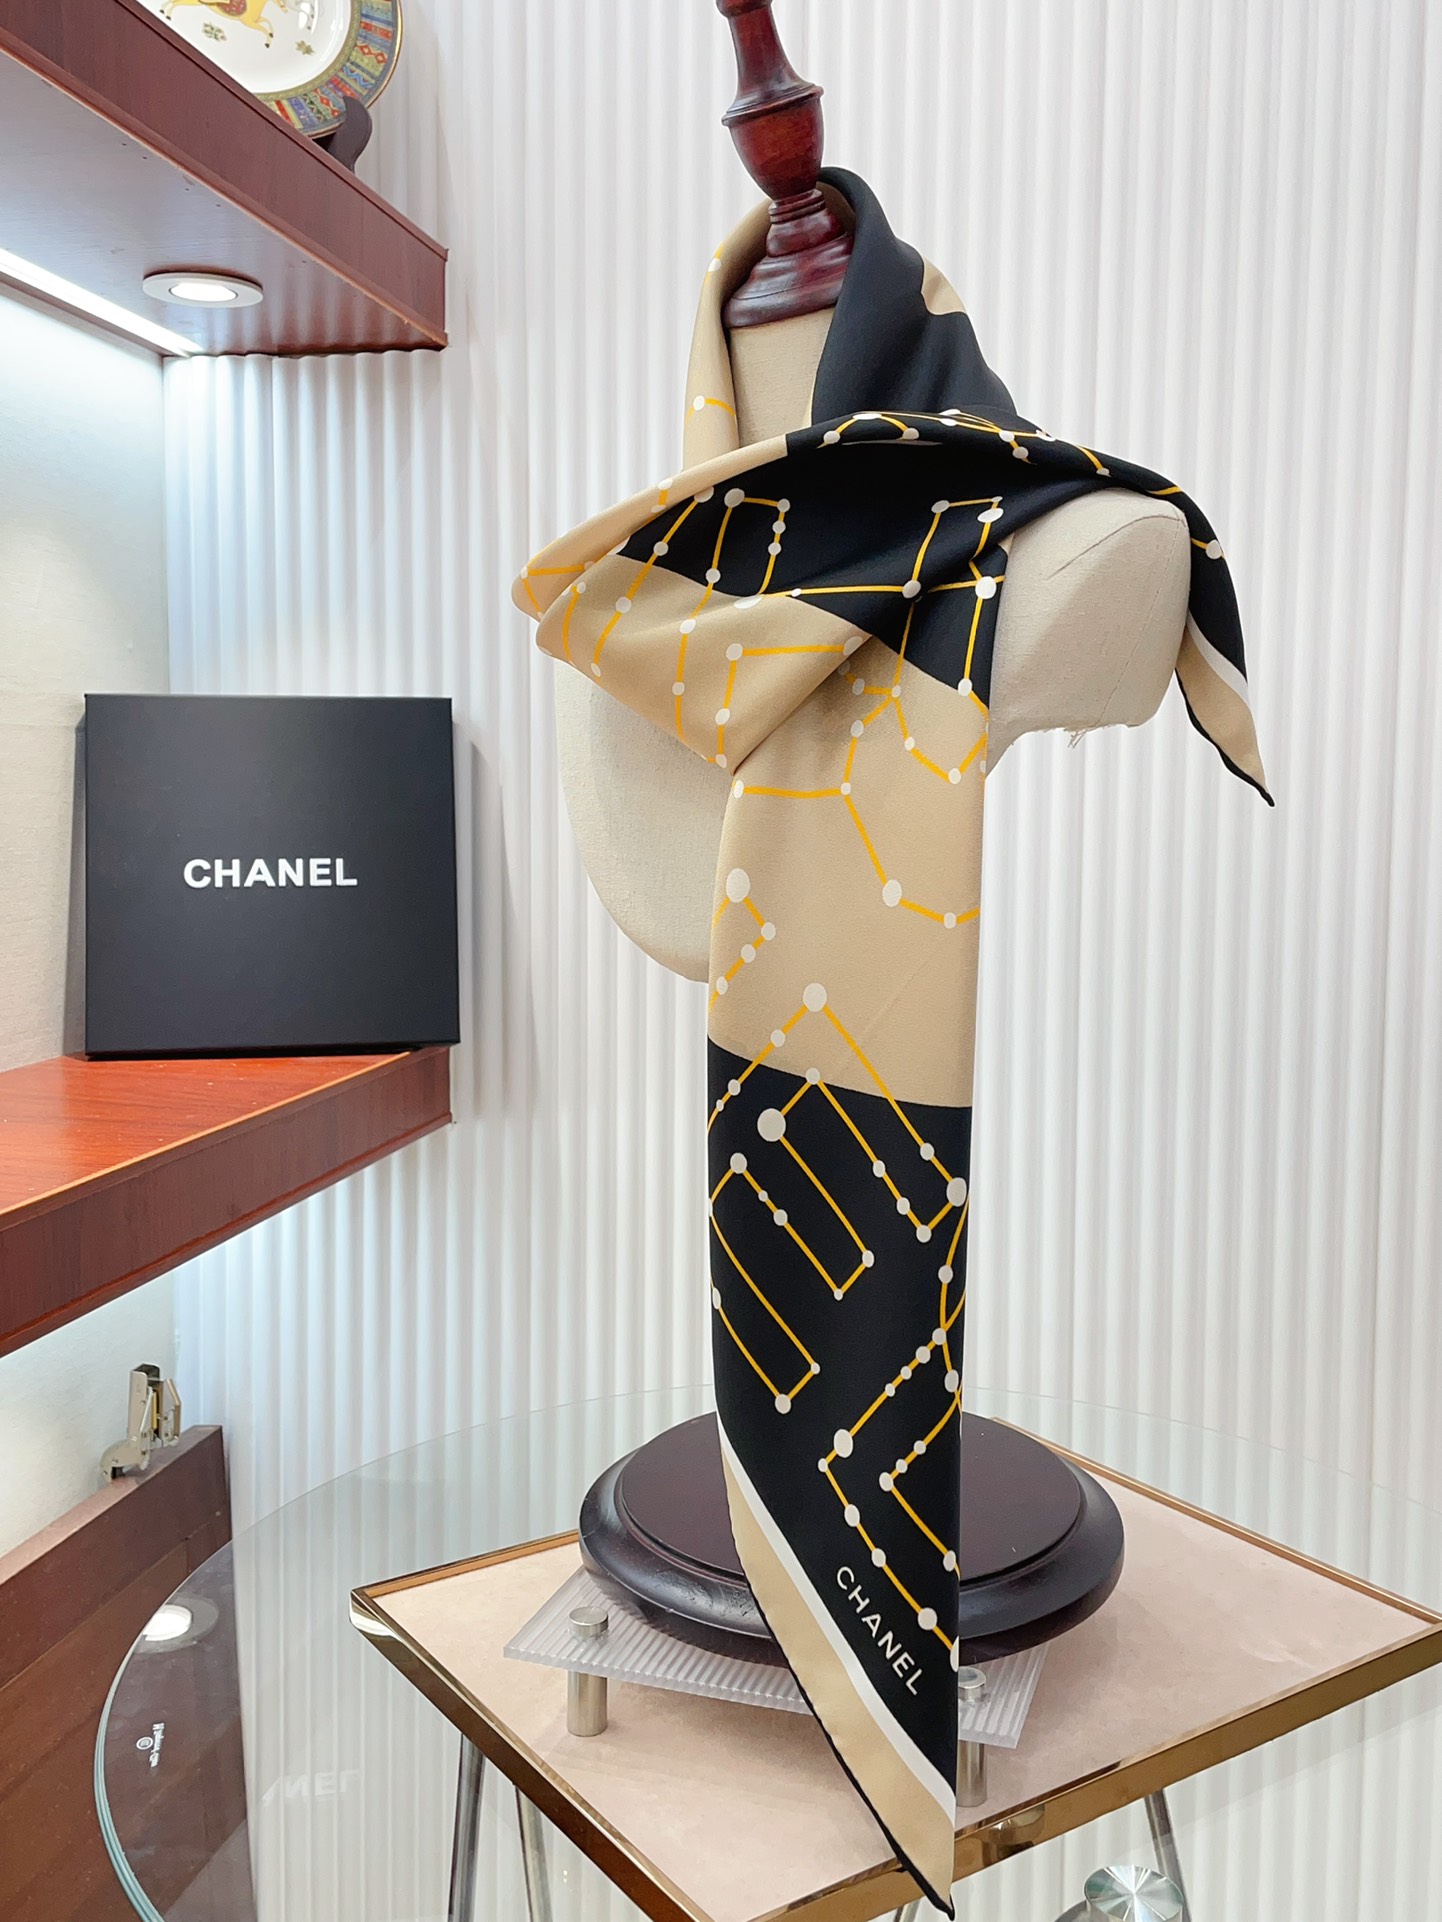 シャネルスカーフ激安通販 シルク 人気定番 美しい ロゴマーク シンプル ファッション レディース ブラウン_7